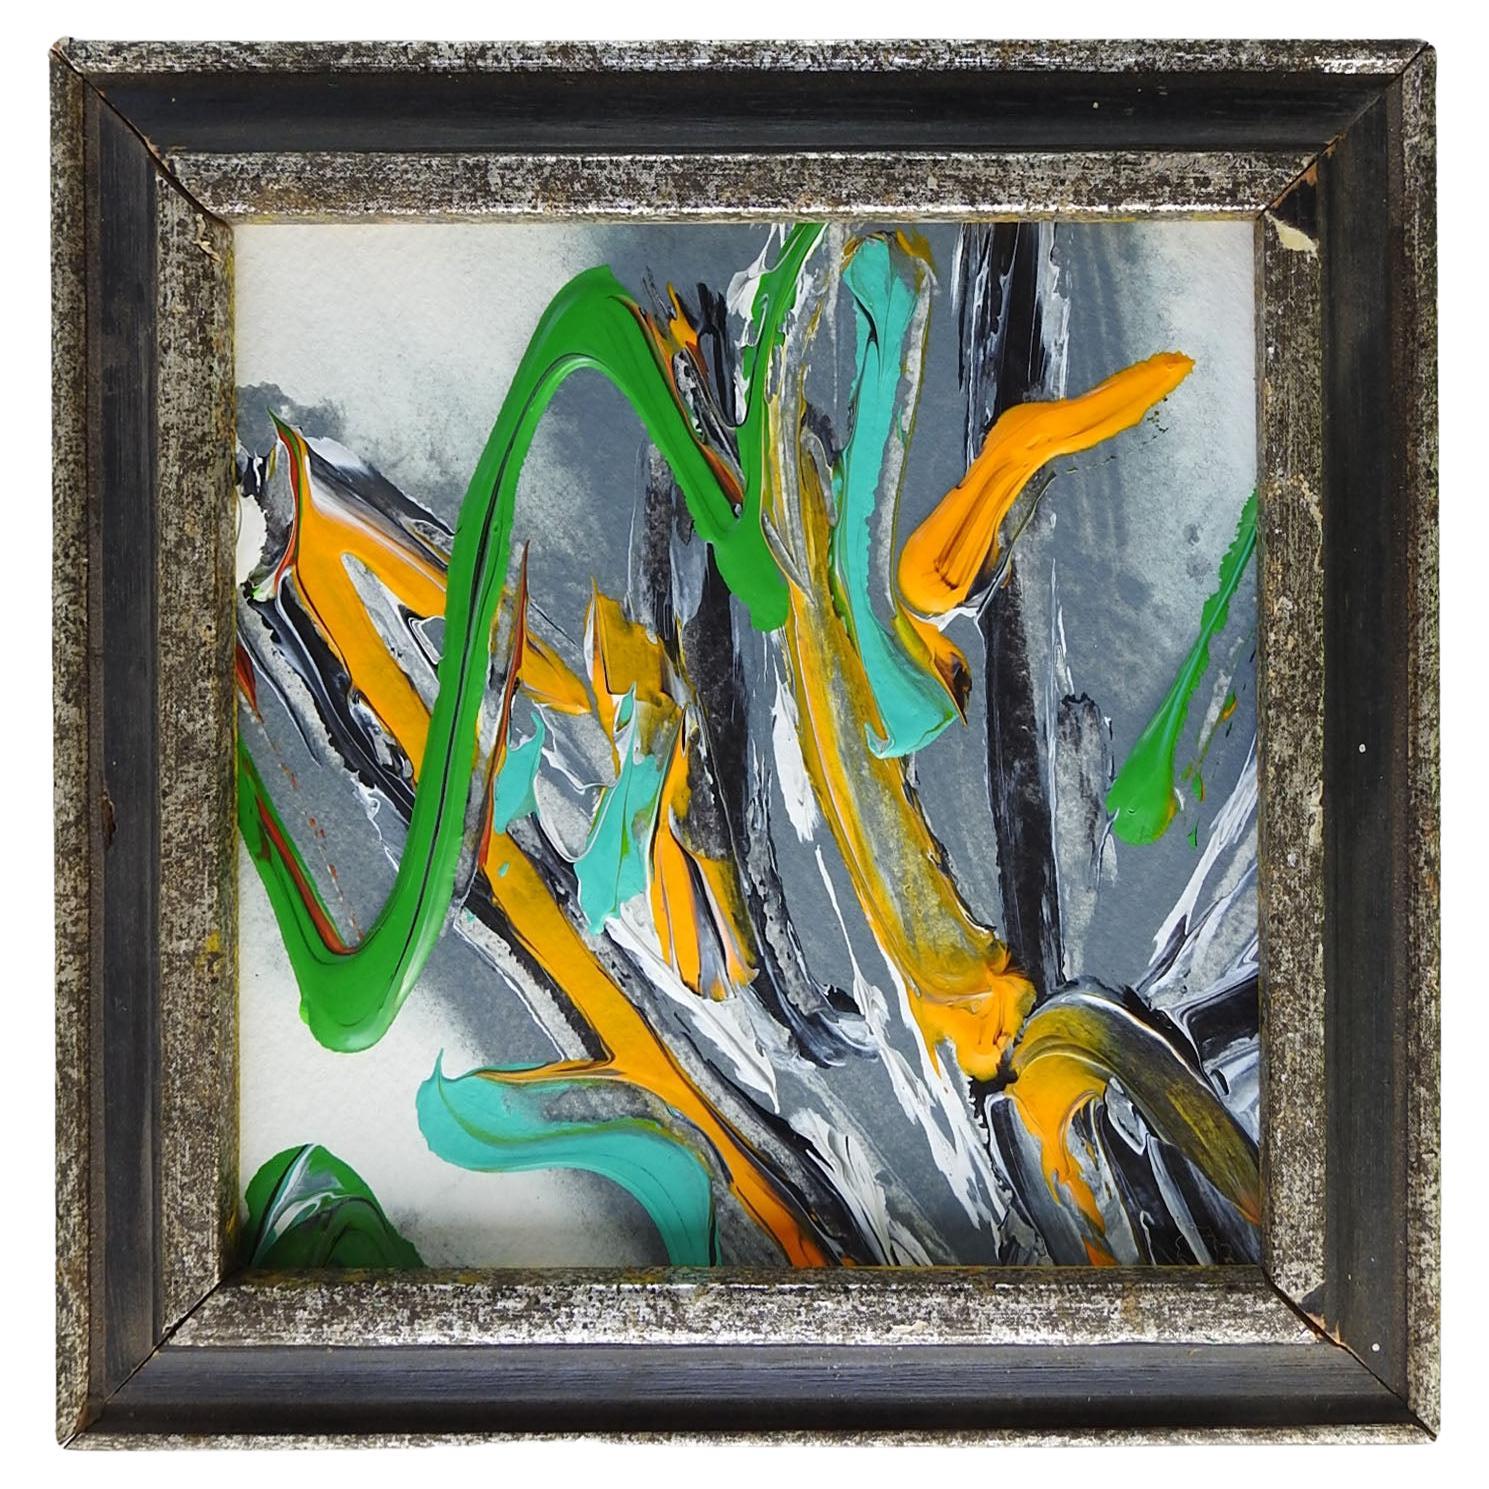 Abstraktes grünes, gelbes und graues Gemälde im Vintage-Stil